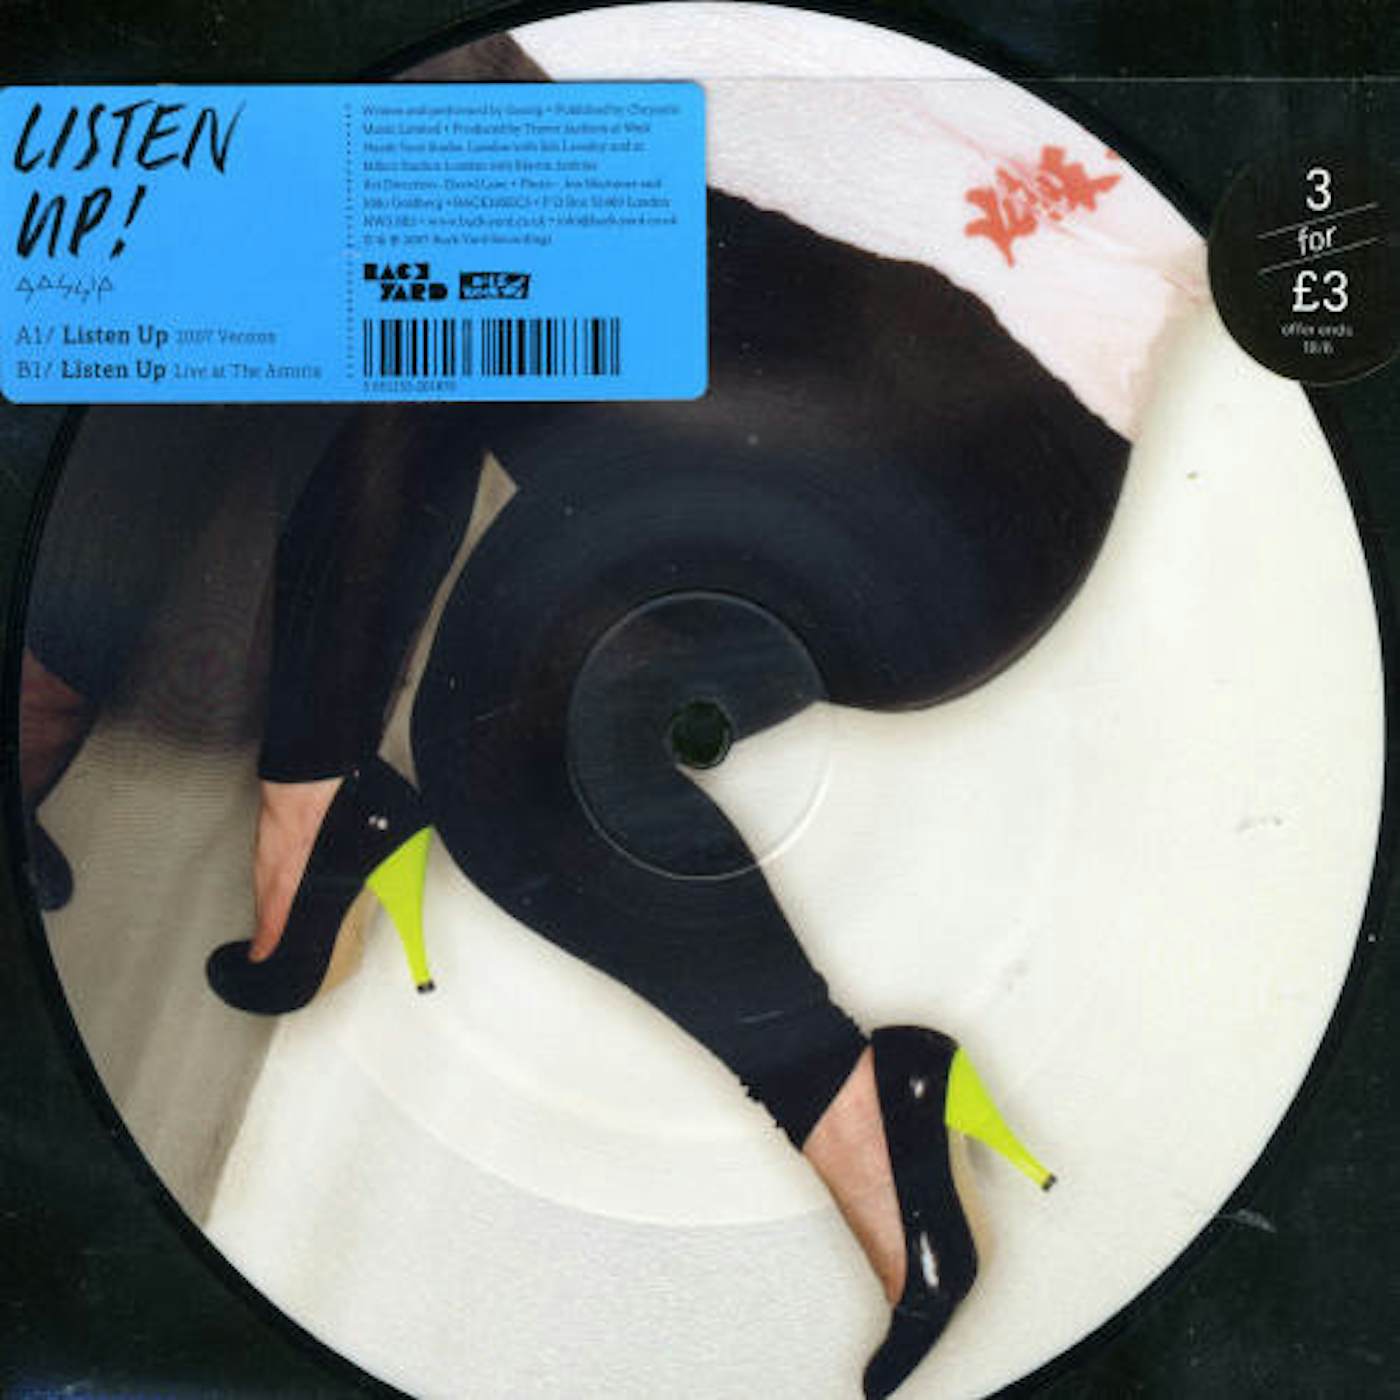 Gossip LISTEN UP PT. 2 Vinyl Record